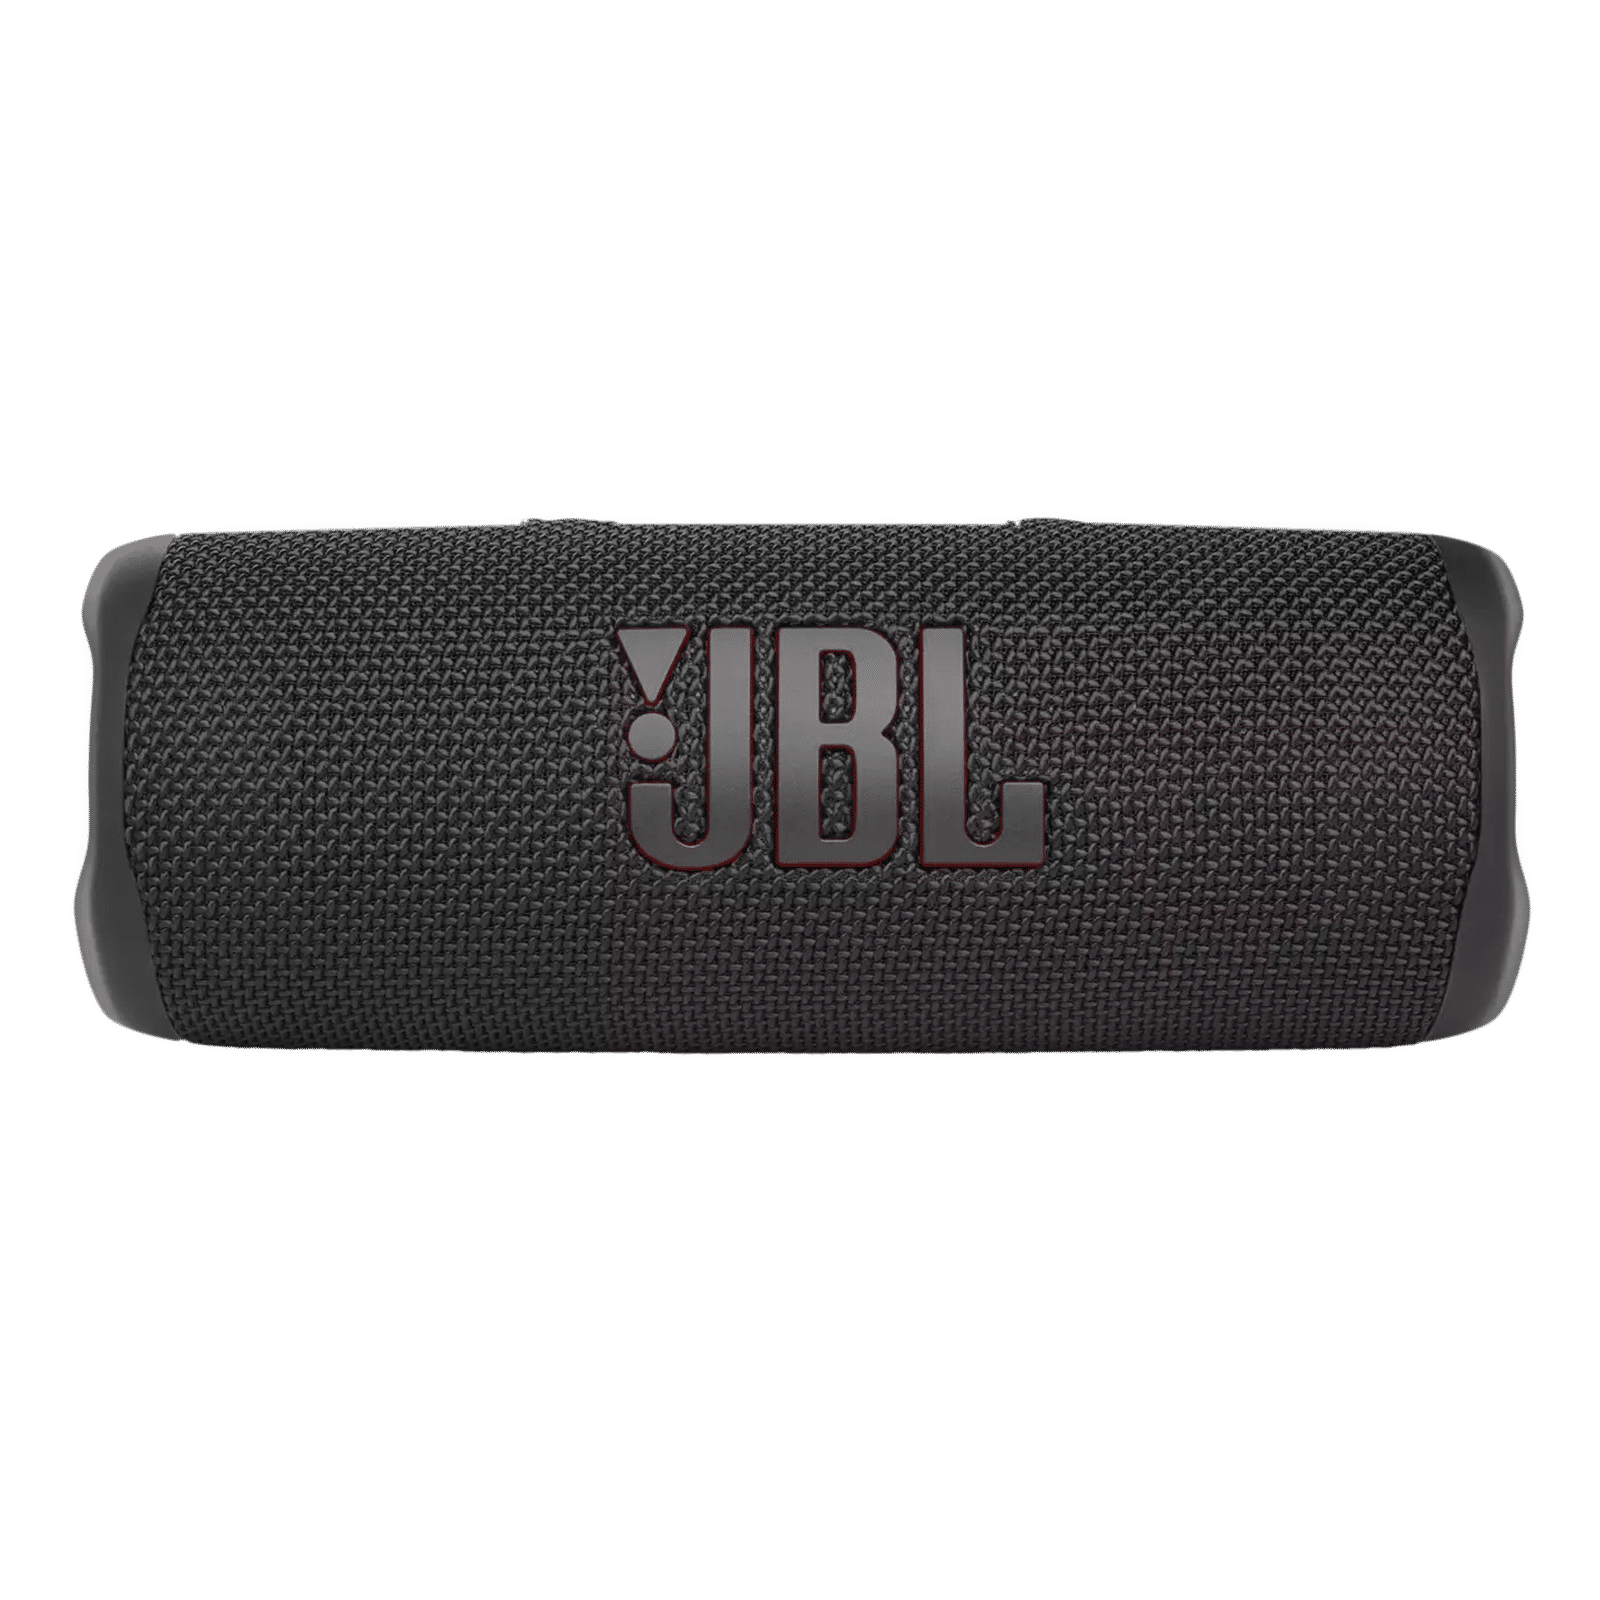 jbl flip essential 2 : r/JBL